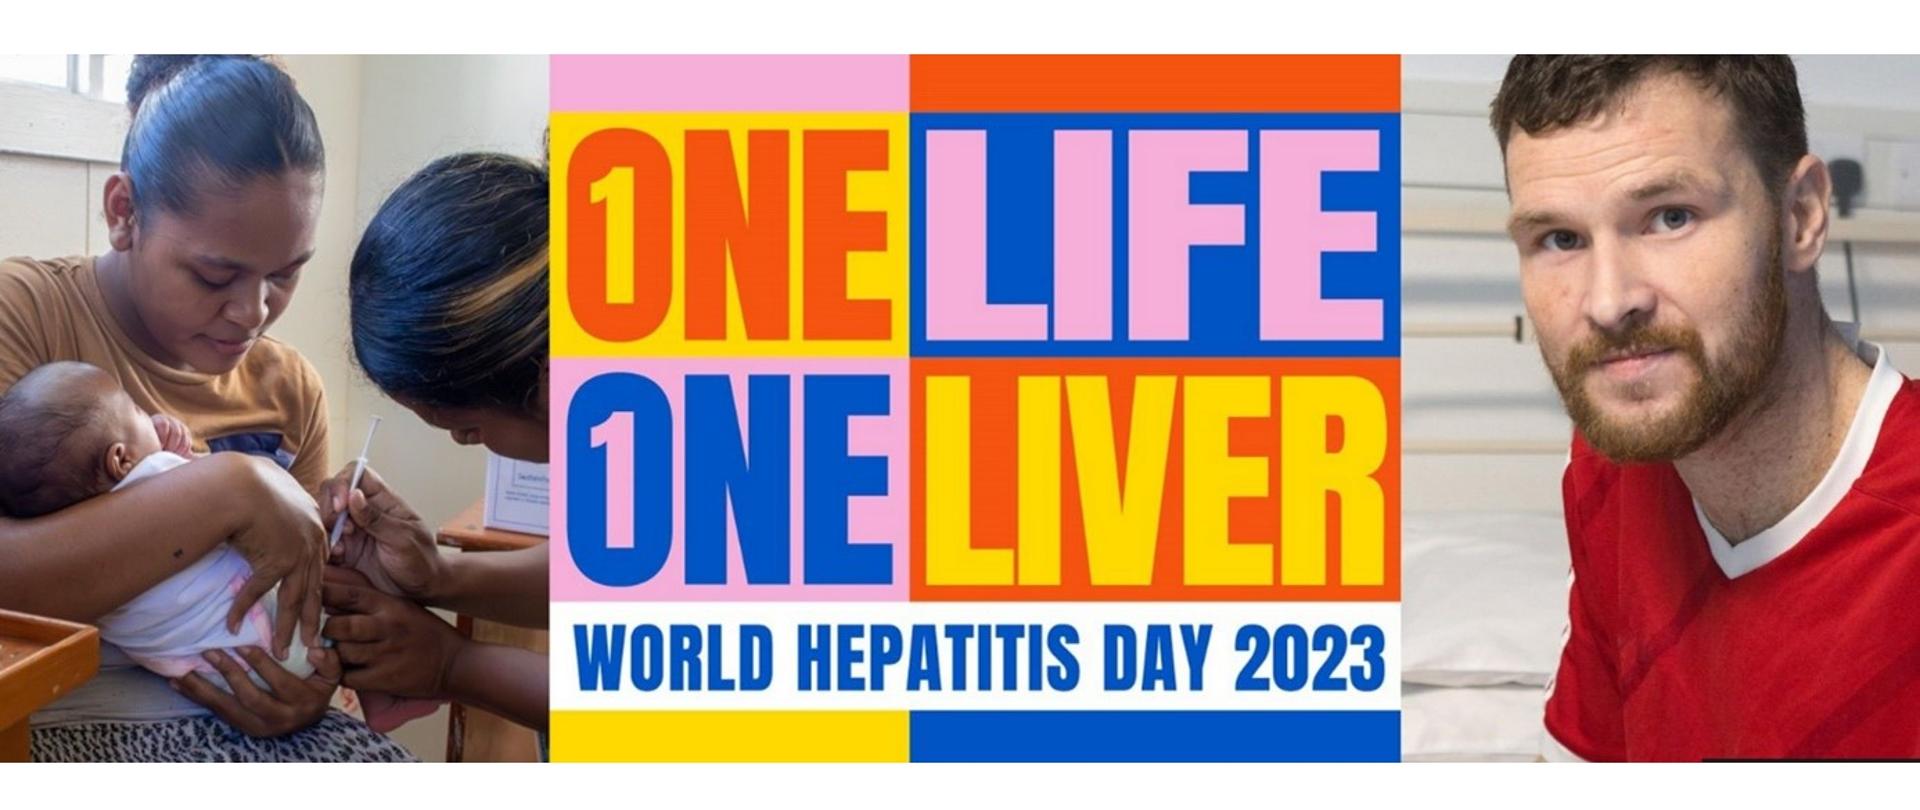 Światowy Dzień Wirusowego Zapalenia Wątroby 2023
Na środku zdjęcia znajduje się hasło "One Life; one liver world hepatitis day 2023". Na obrazku z prawej strony znajduje się mężczyzna w czerwonej koszulce, z prawej strony kobieta trzymająca dziecko, które jest szczepione przez lekarza